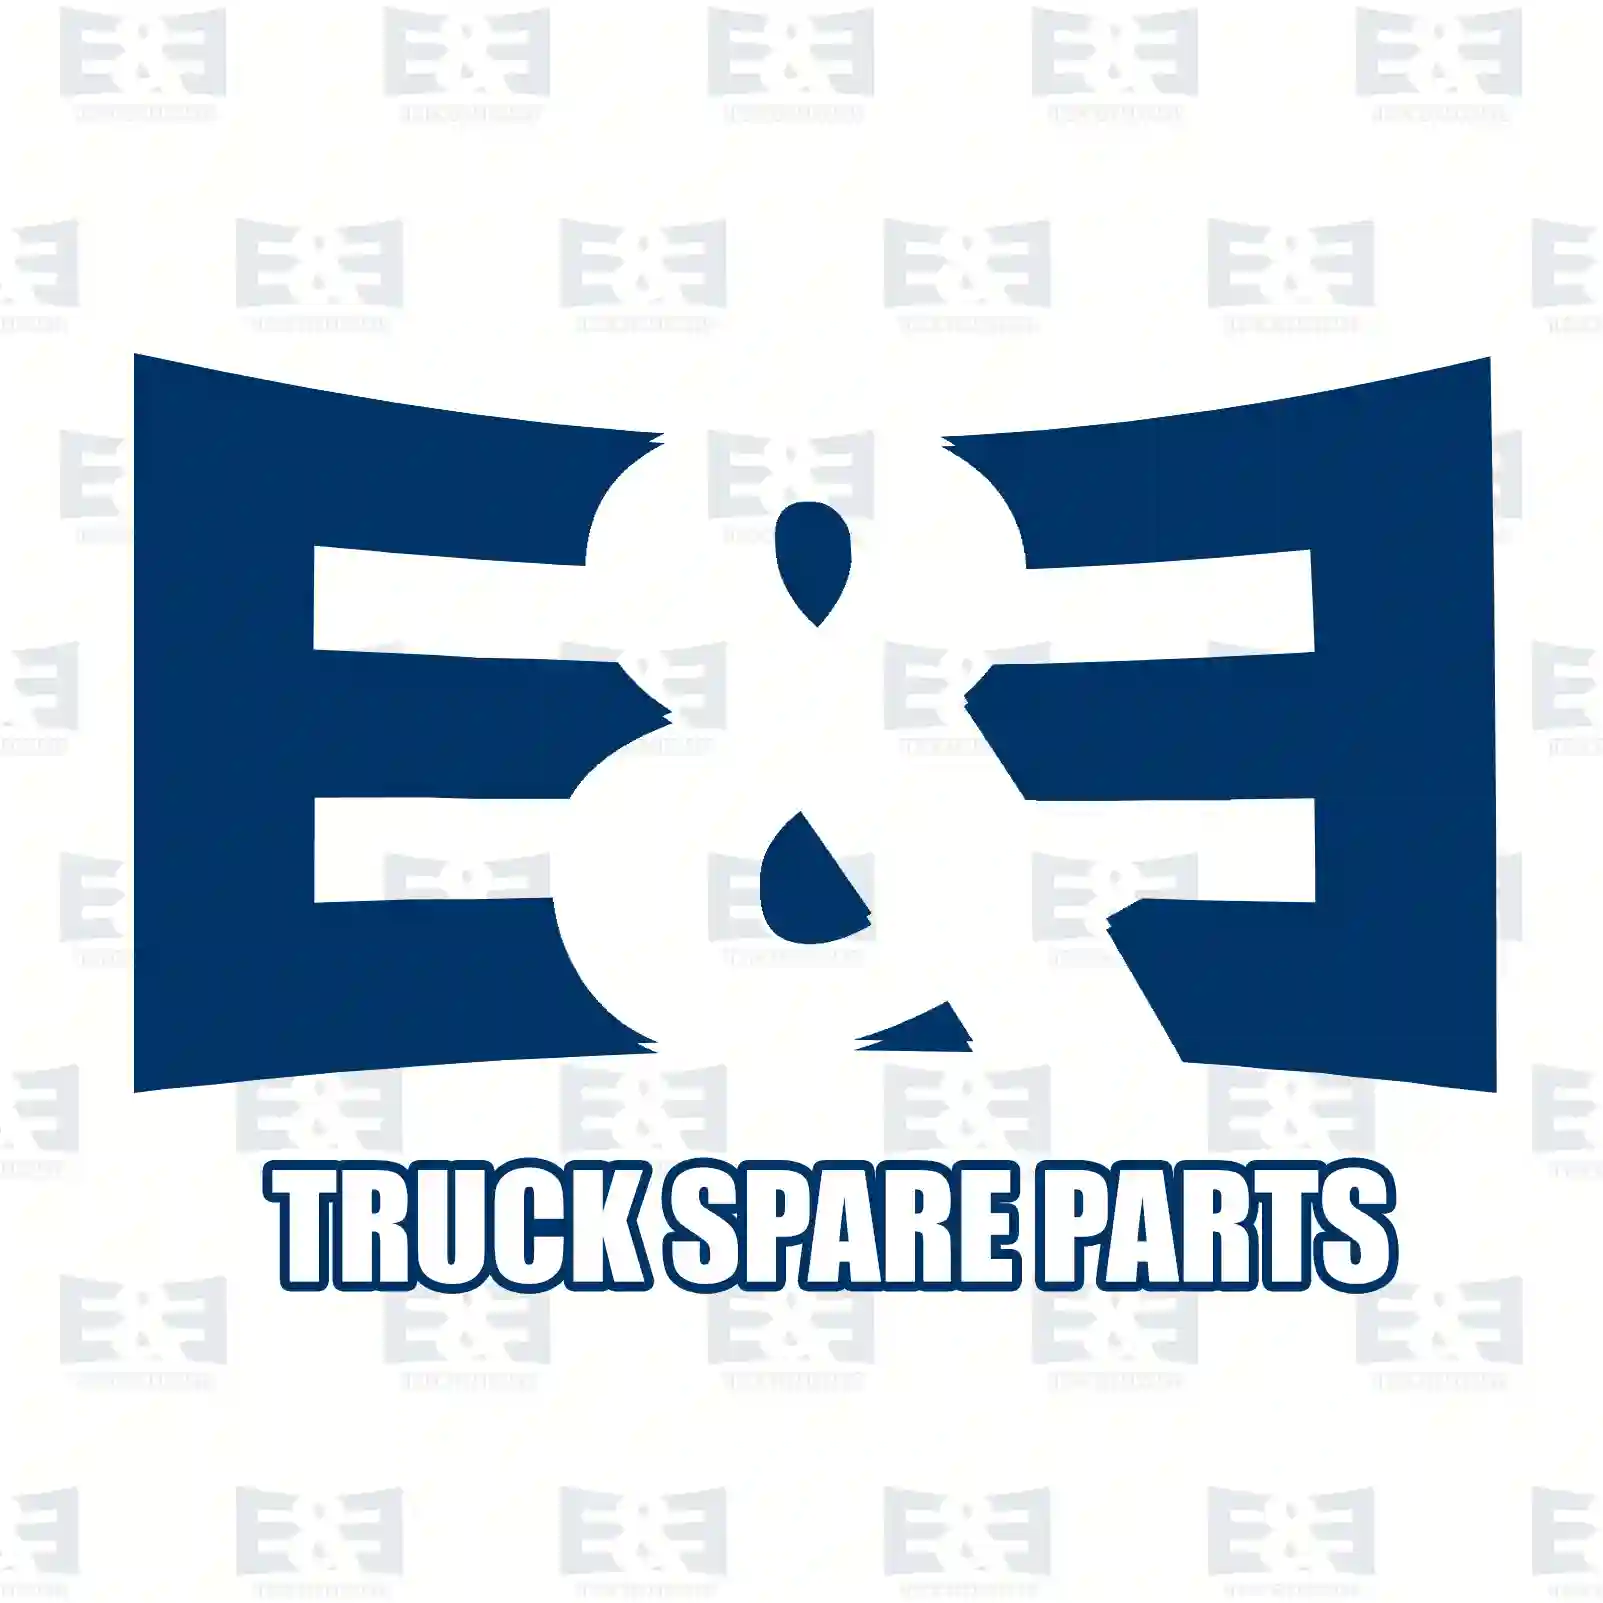 EBS sensor, 2E2290363, 81271206216, 81271206247, 81271206300 ||  2E2290363 E&E Truck Spare Parts | Truck Spare Parts, Auotomotive Spare Parts EBS sensor, 2E2290363, 81271206216, 81271206247, 81271206300 ||  2E2290363 E&E Truck Spare Parts | Truck Spare Parts, Auotomotive Spare Parts